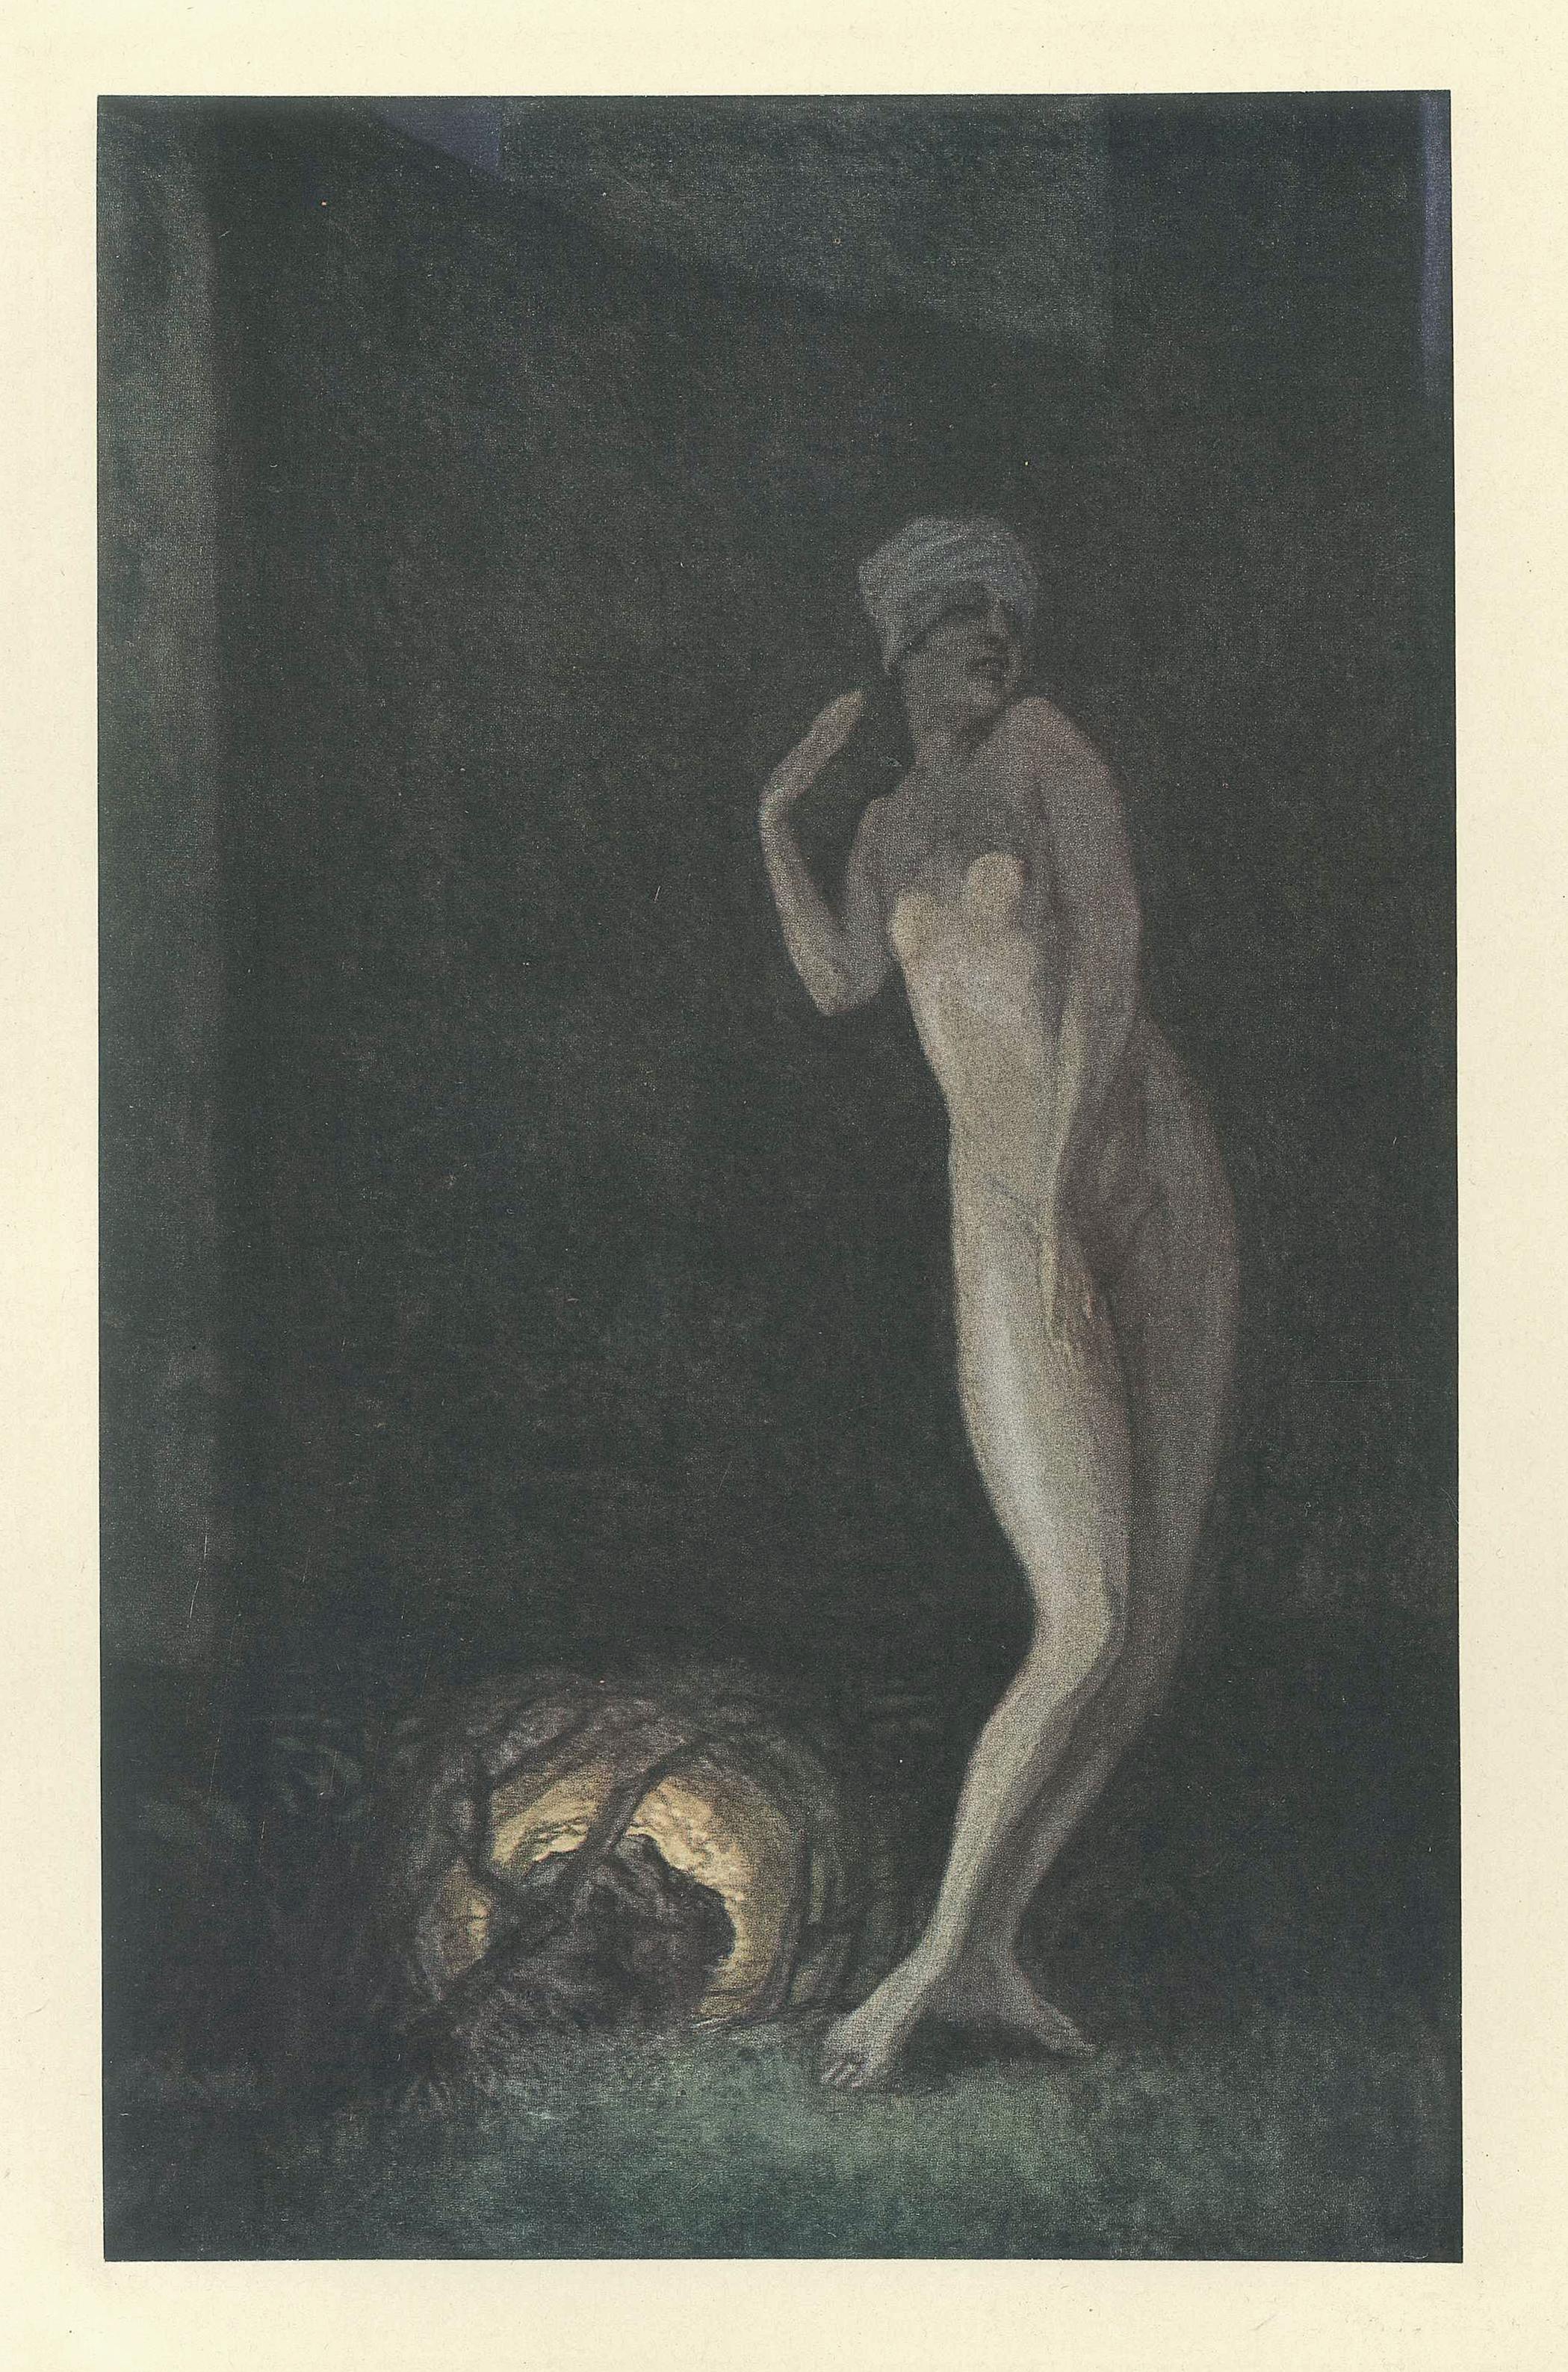 Franz von Bayros (Choisi Le Conin) Figurative Print - Salome Tanzt - Vintage Héliogravure by Franz von Bayros - 1921 ca.